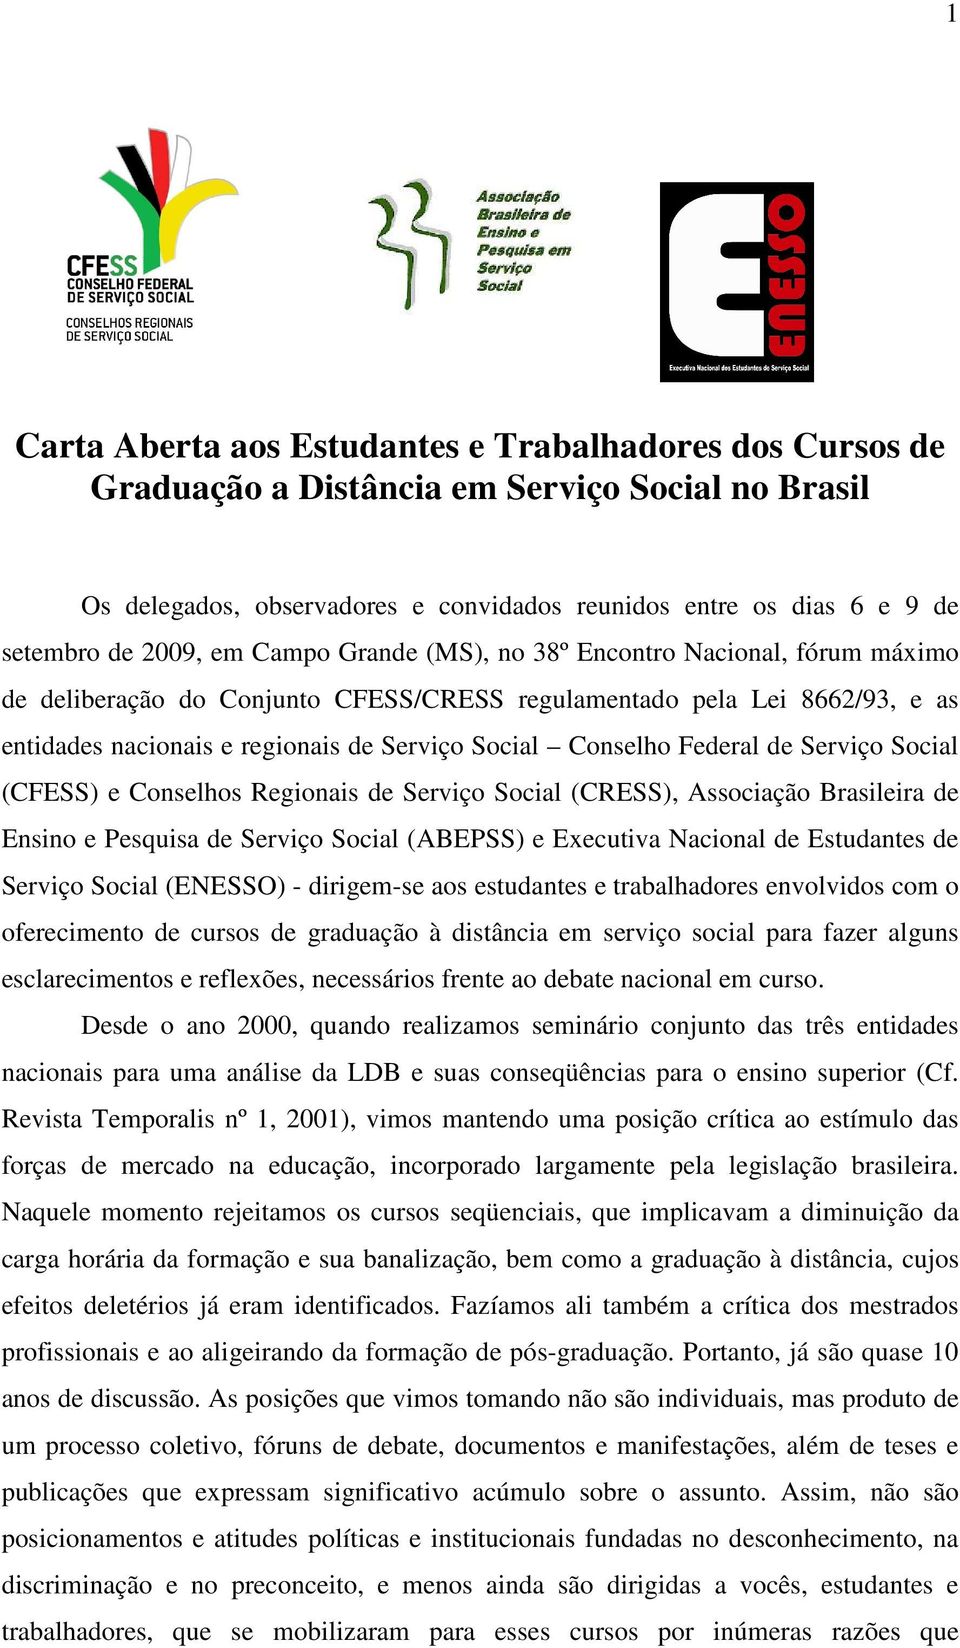 Federal de Serviço Social (CFESS) e Conselhos Regionais de Serviço Social (CRESS), Associação Brasileira de Ensino e Pesquisa de Serviço Social (ABEPSS) e Executiva Nacional de Estudantes de Serviço